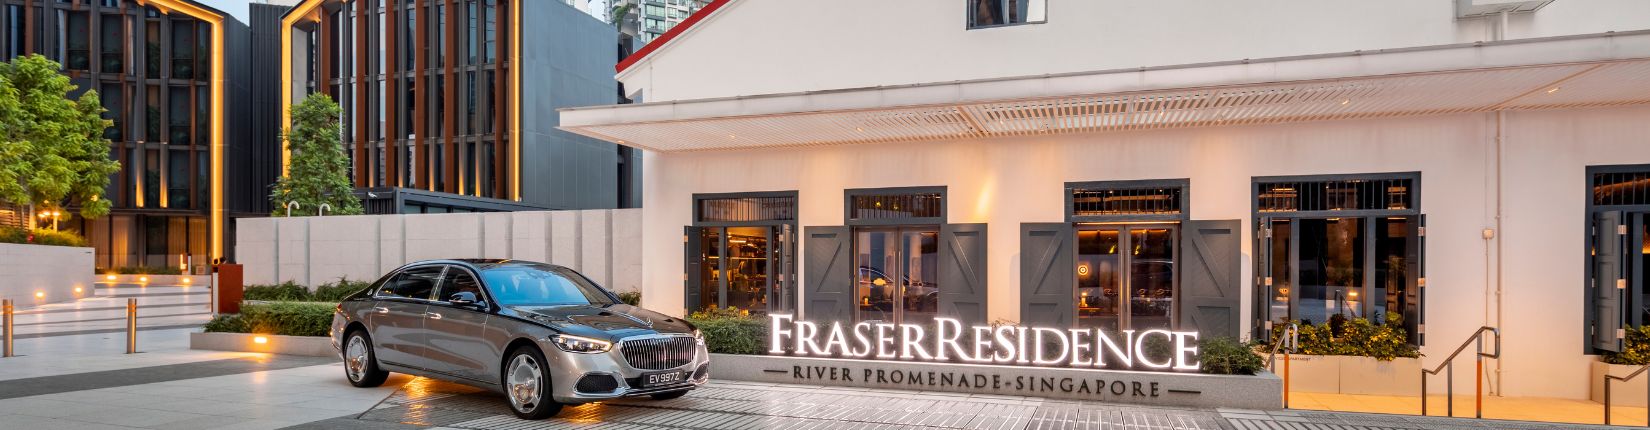 Fraser Residence River Promenade, Singapore